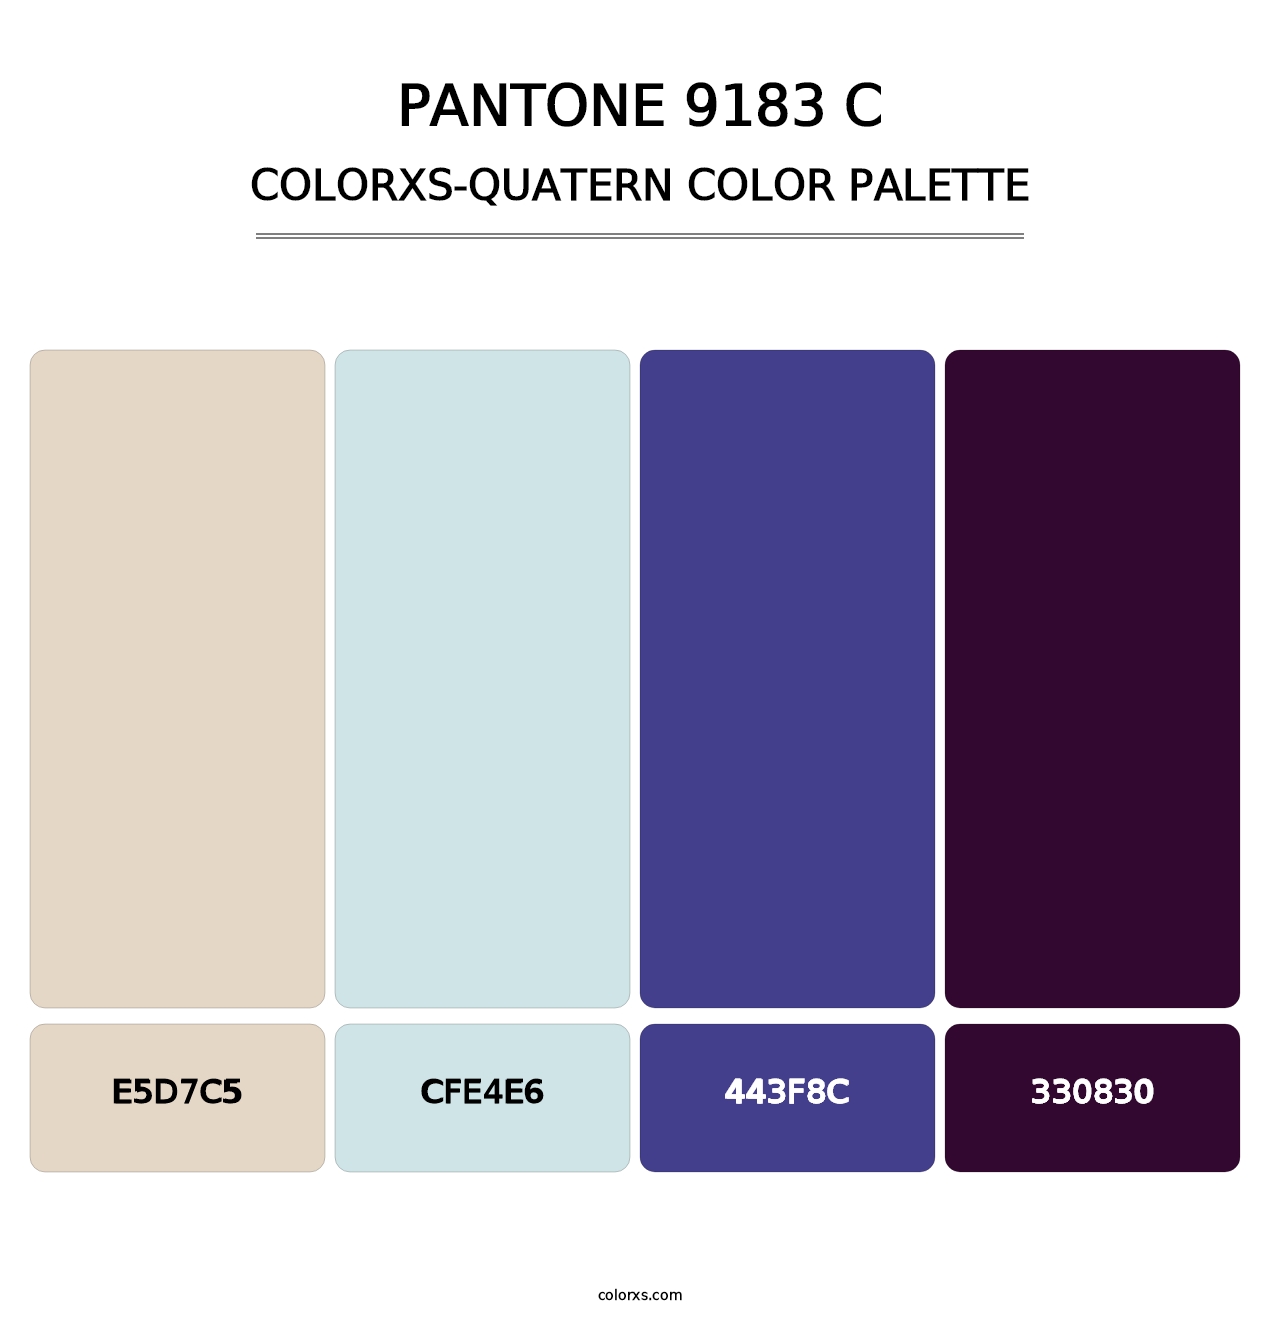 PANTONE 9183 C - Colorxs Quatern Palette